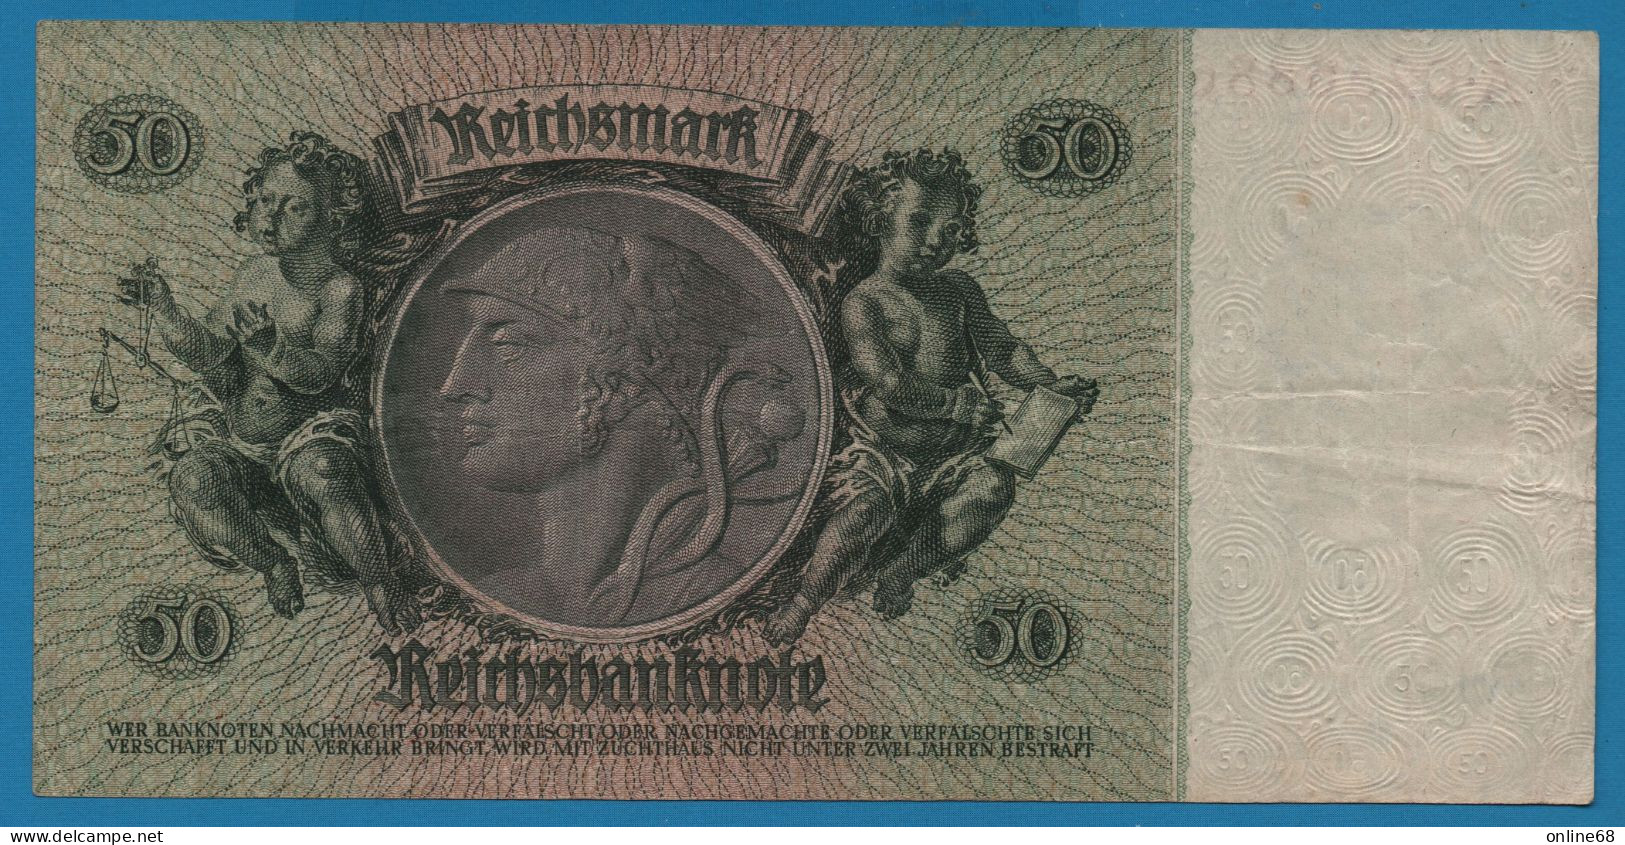 DEUTSCHES REICH 50 REICHSMARK 30.03.1933  # A.02568864 P# 182b David Hansemann - 50 Reichsmark